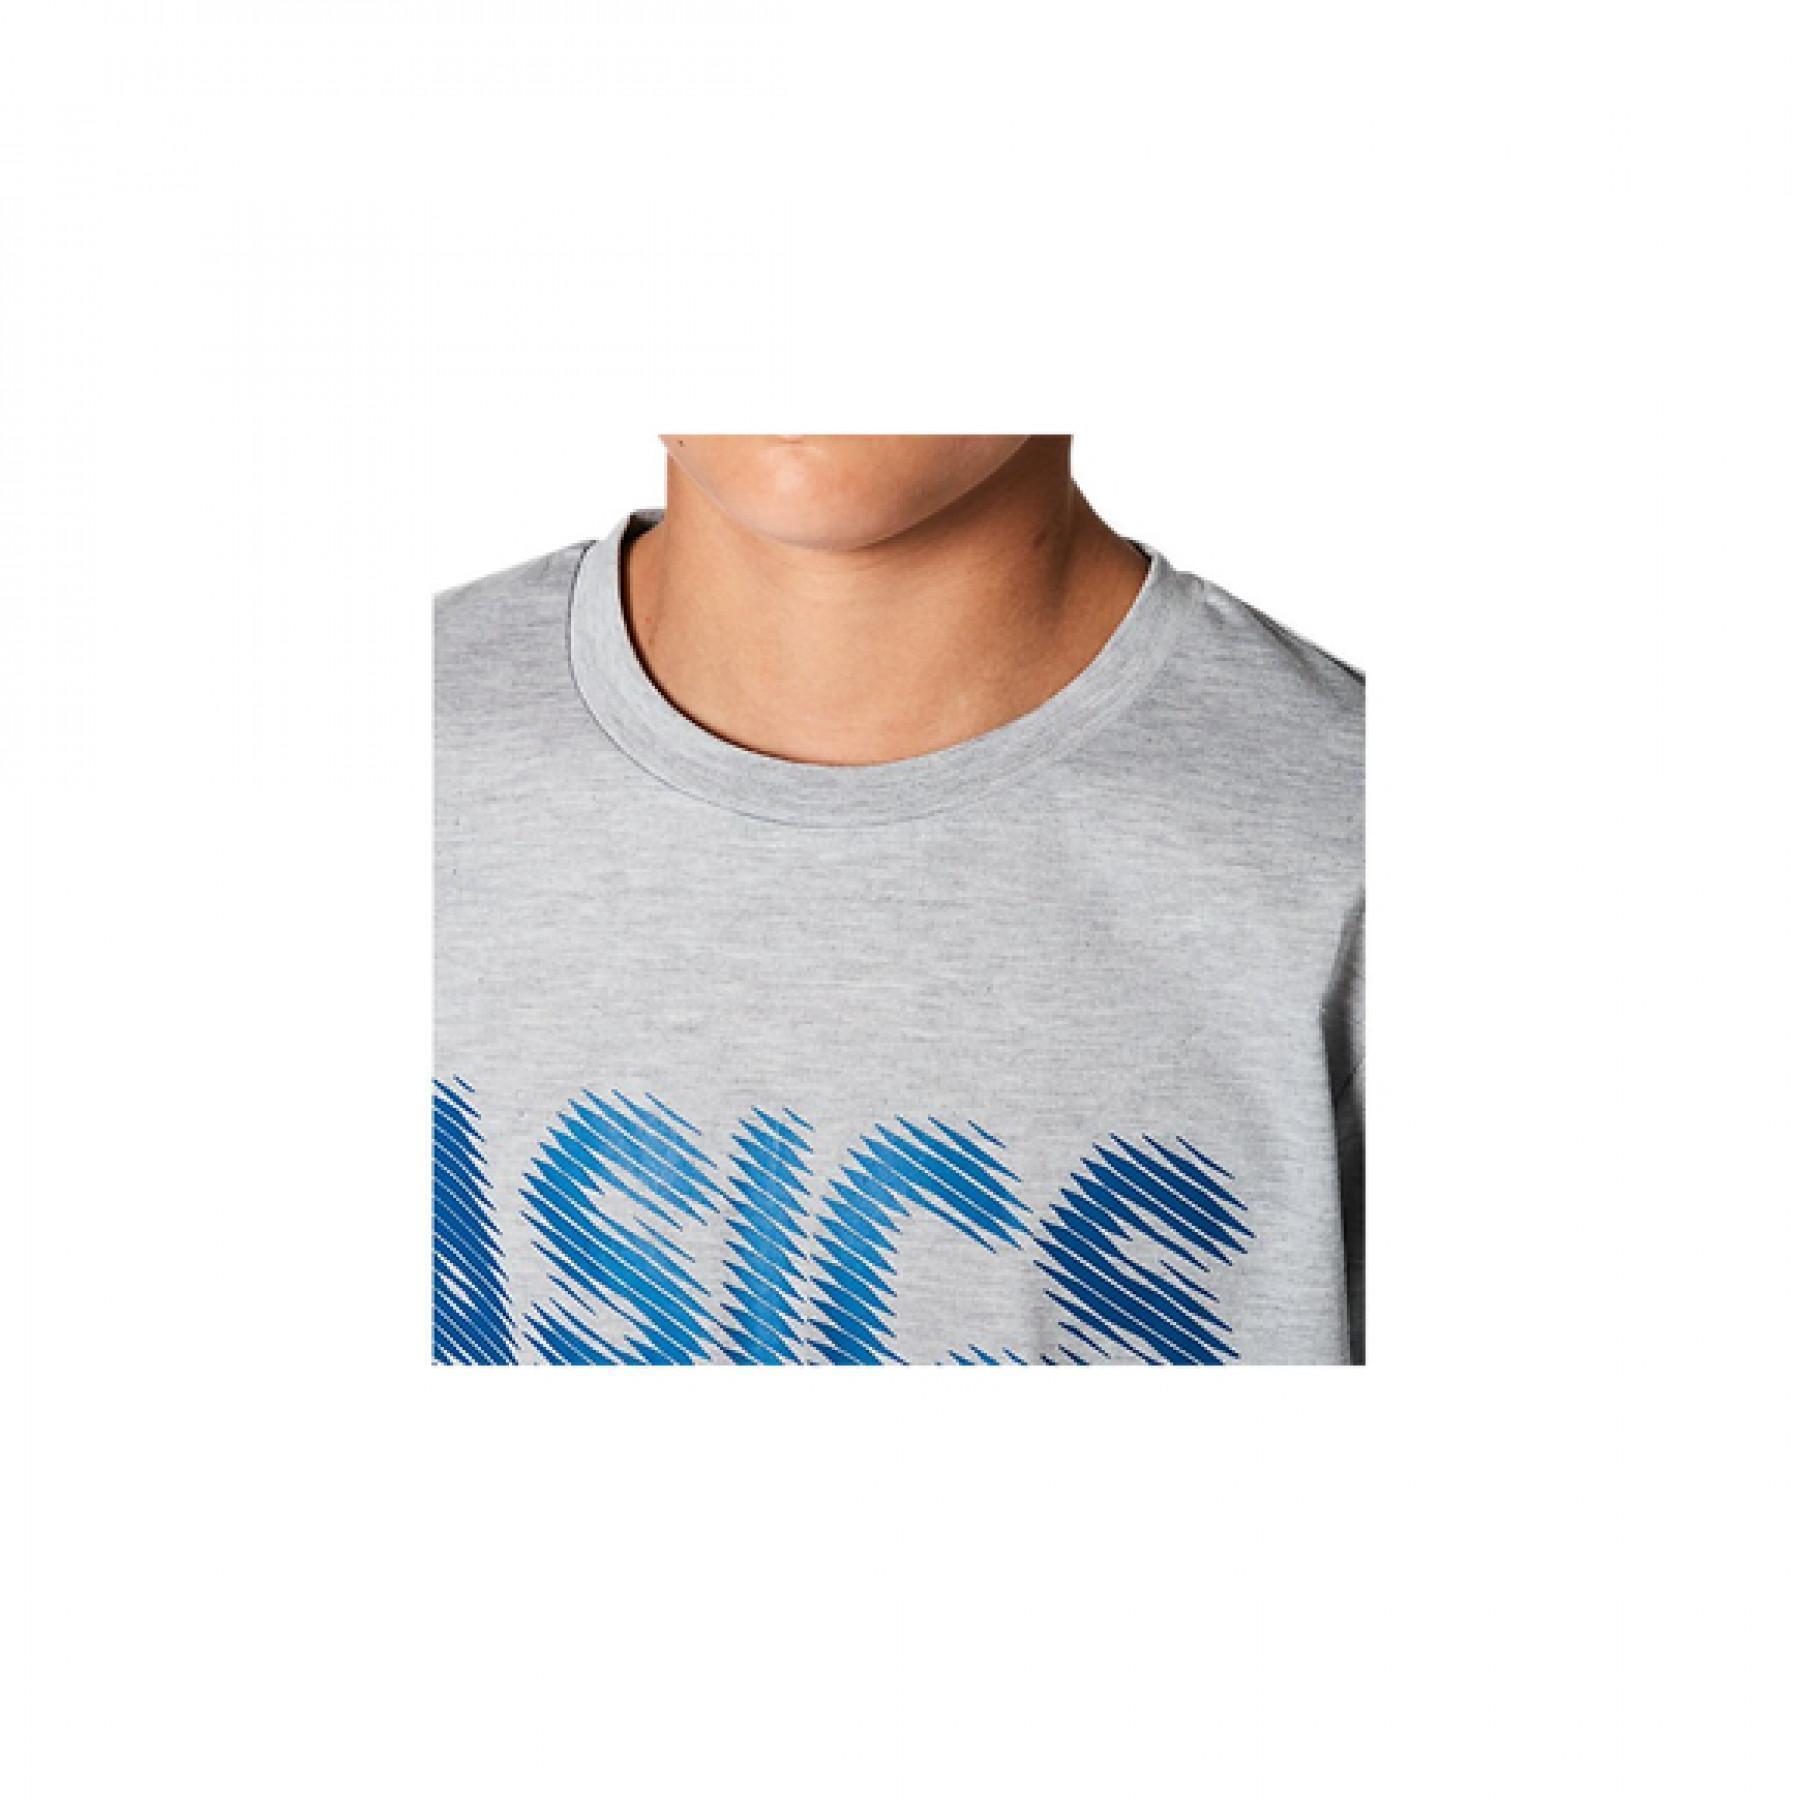 T-shirt enfant Asics Gpxt